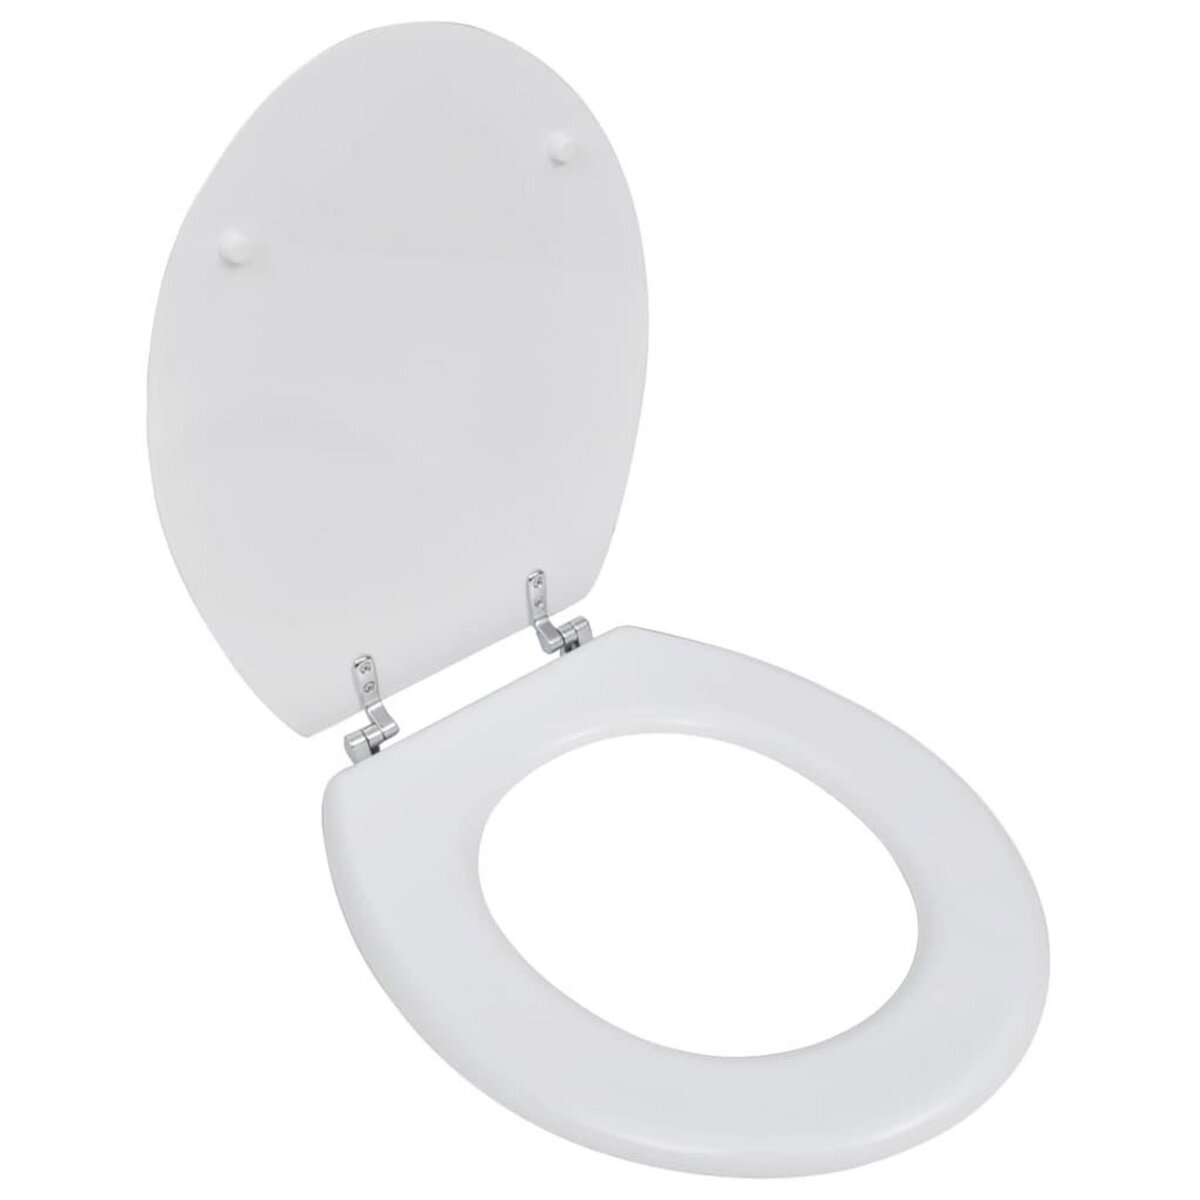 VIDAXL Siege de toilette avec Couvercle MDF Design simple Blanc